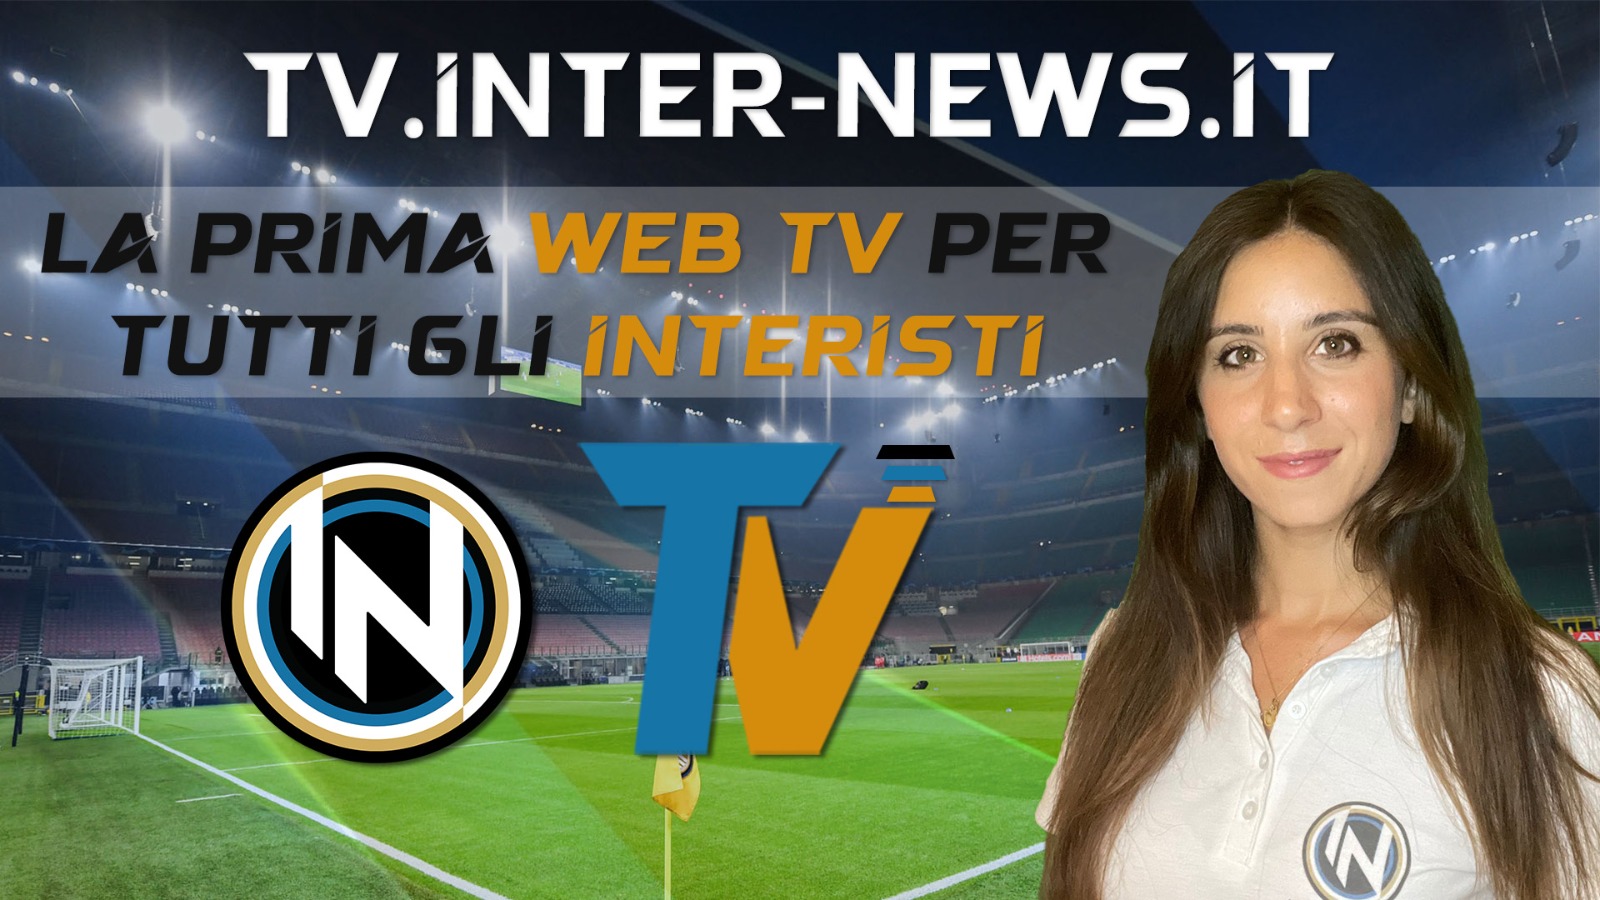 Inter News TV, prima WEB TV crossmediale gratuita per i tifosi!